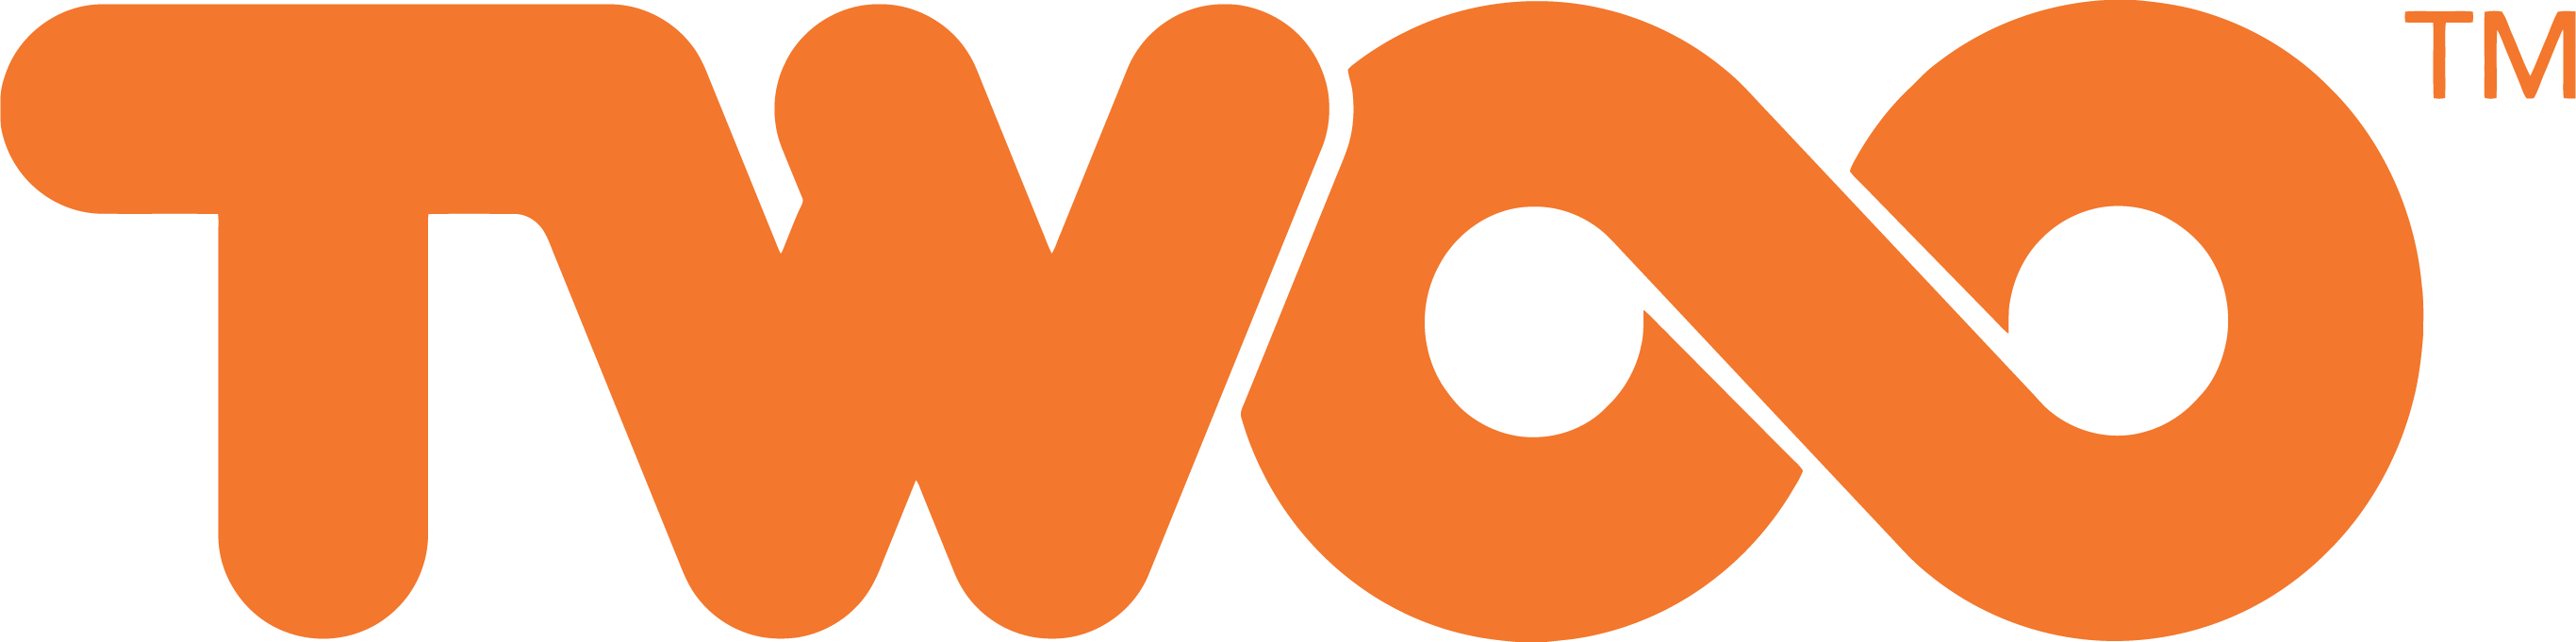 Twoo Logo png